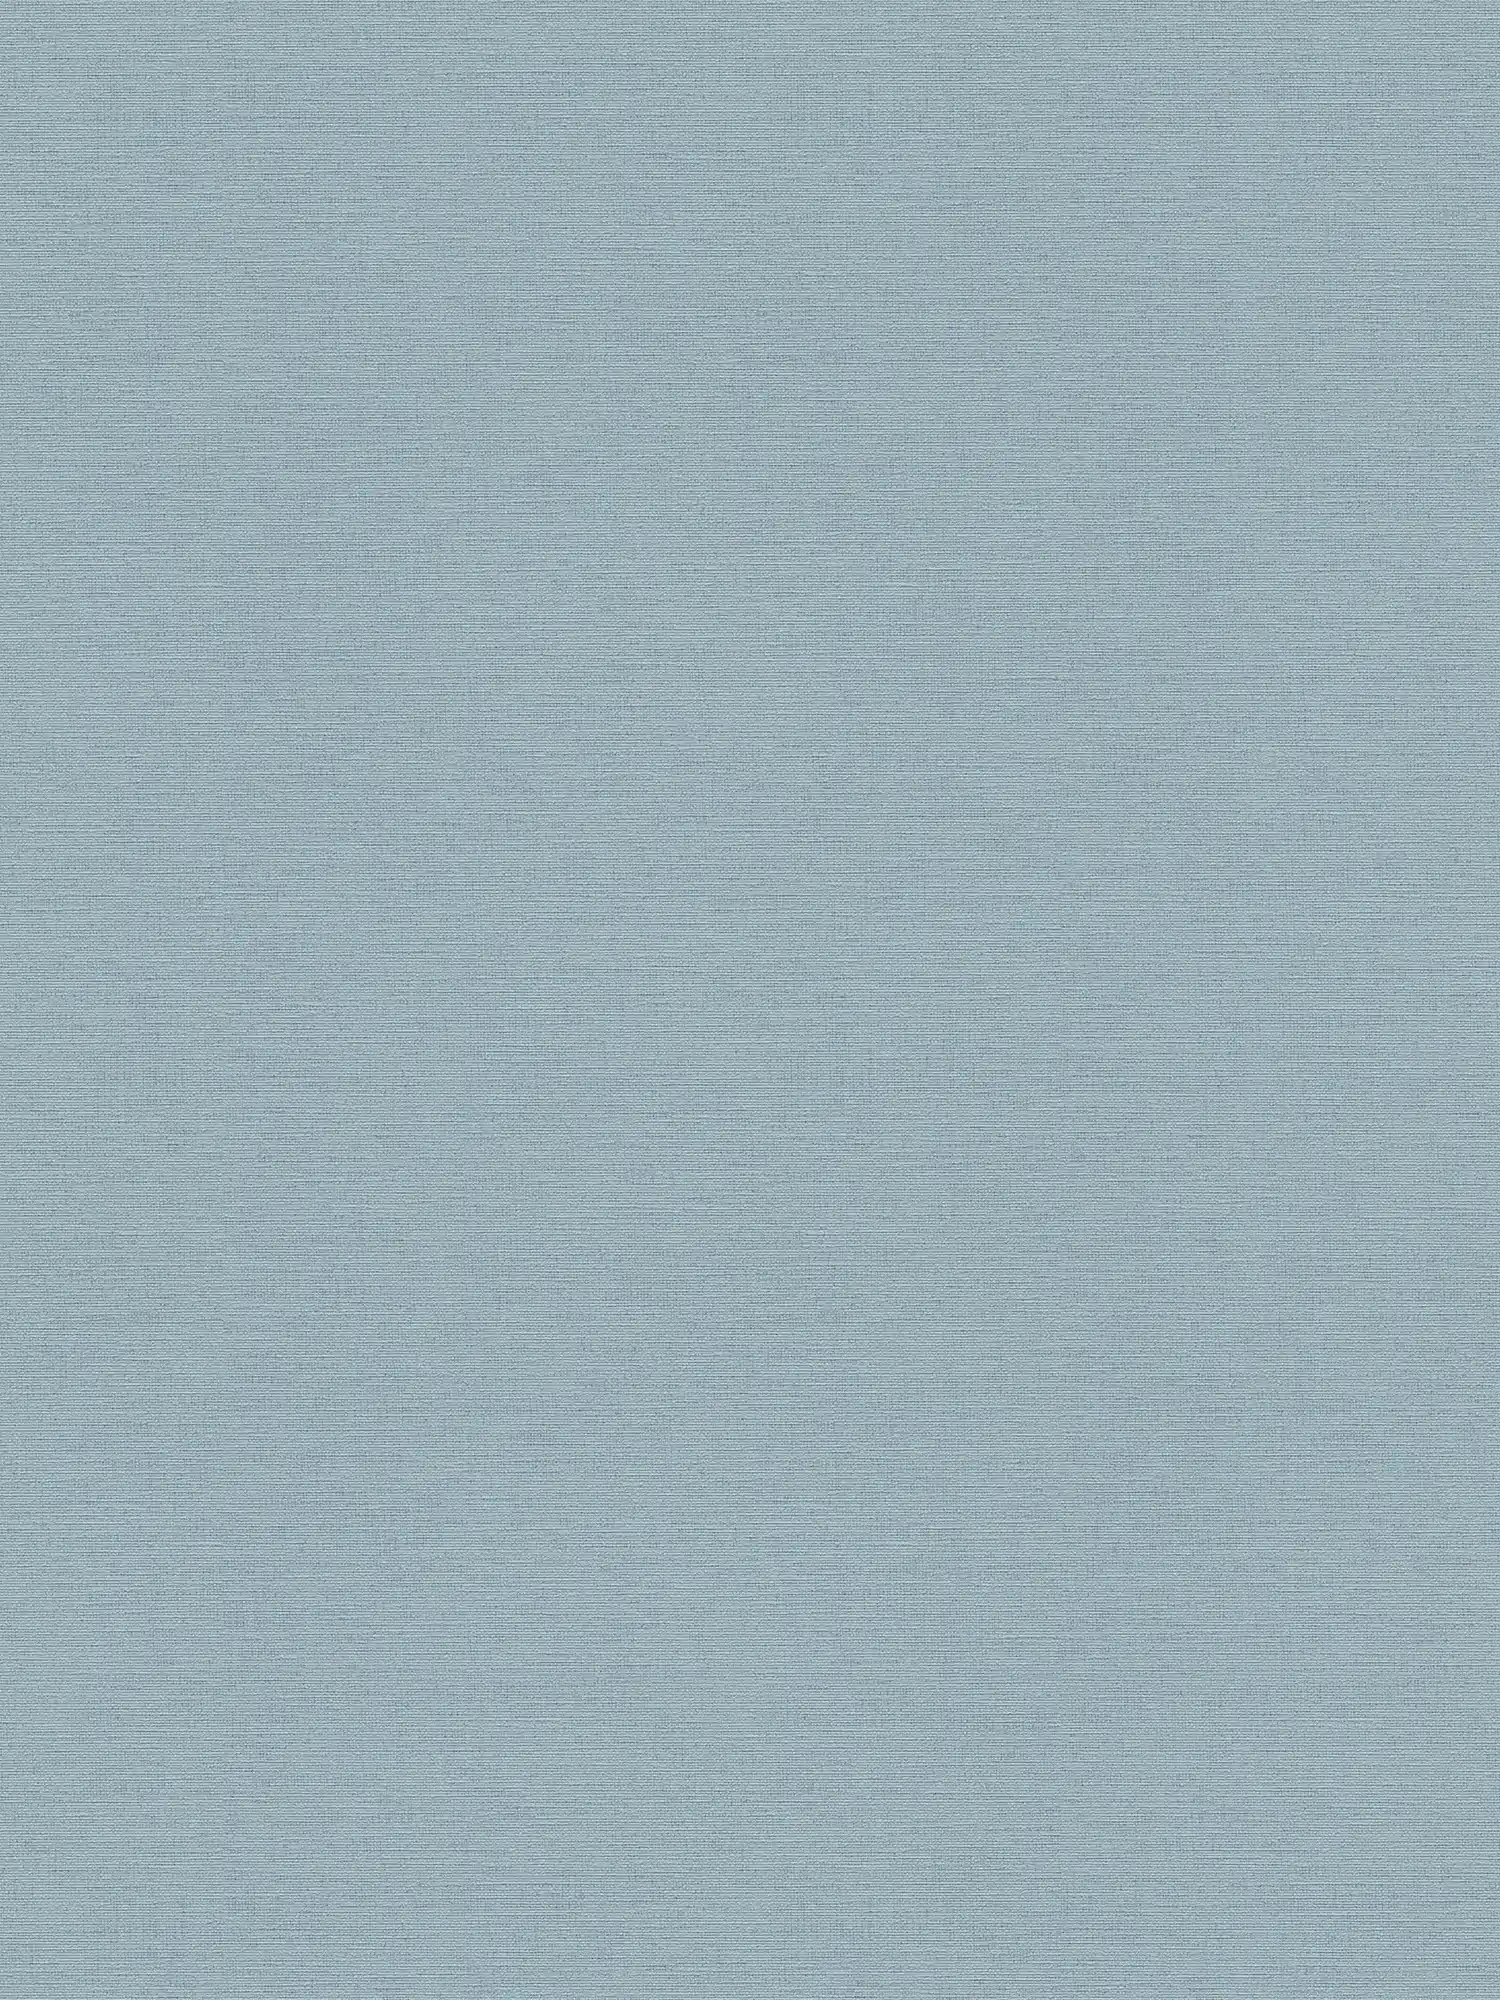 Papel pintado de lino azul claro con aspecto textil de estilo escandinavo
